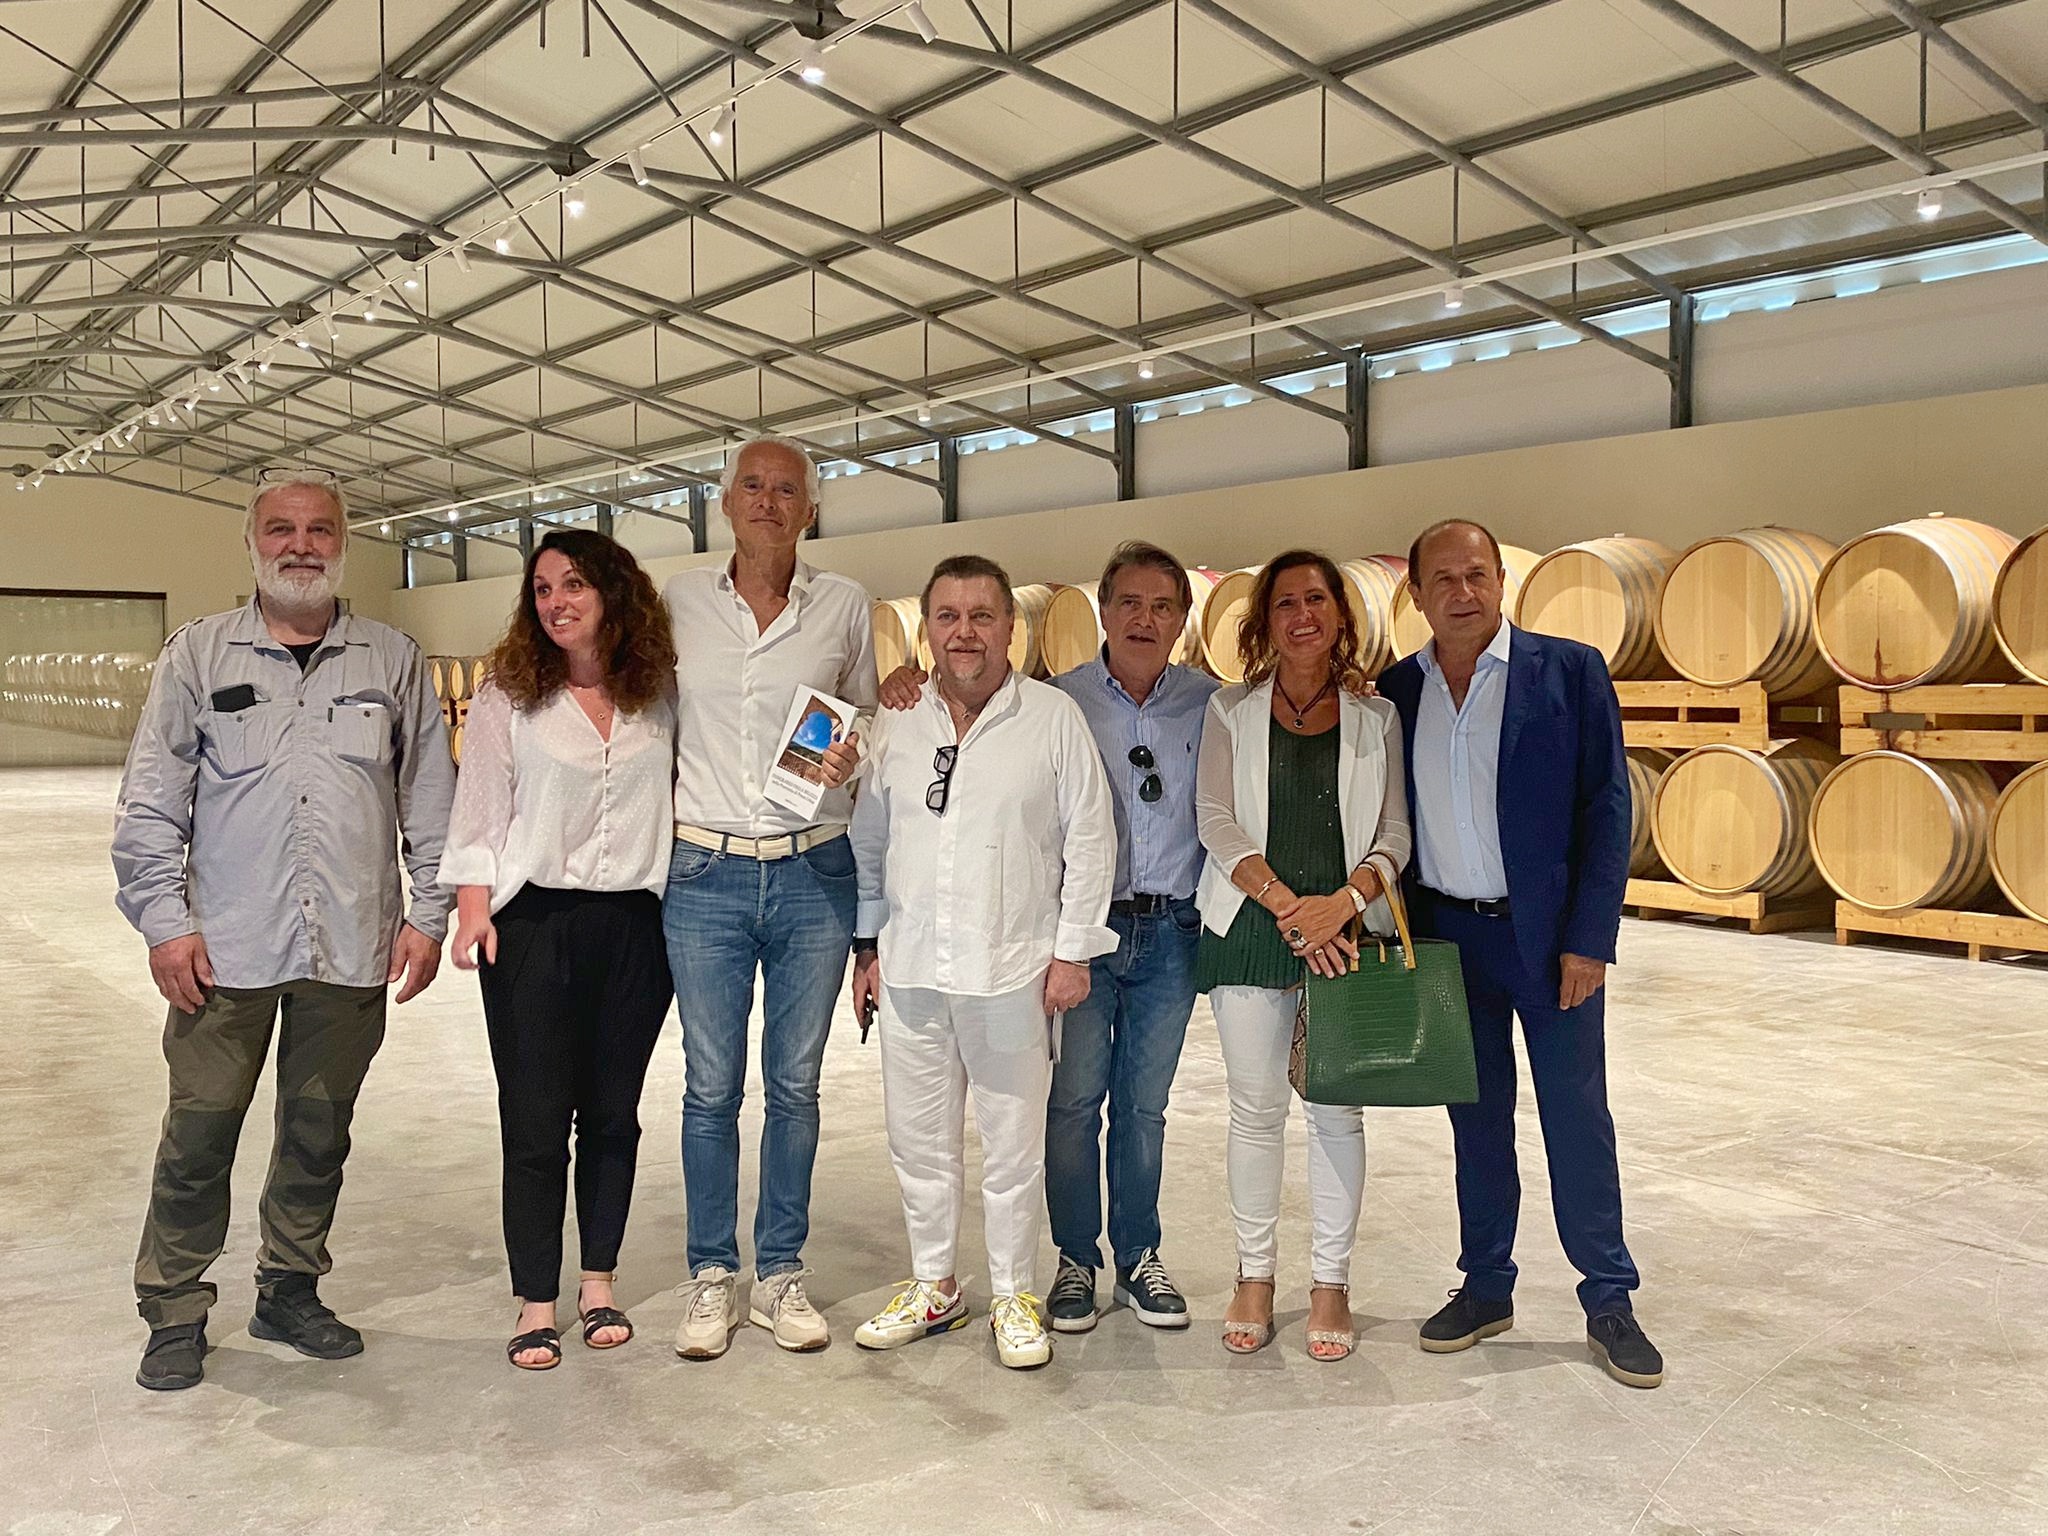 Confcommercio di Pesaro e Urbino - Conoscere le eccellenze: Confcommercio Marche Nord in visita all'Azienda Guerrieri